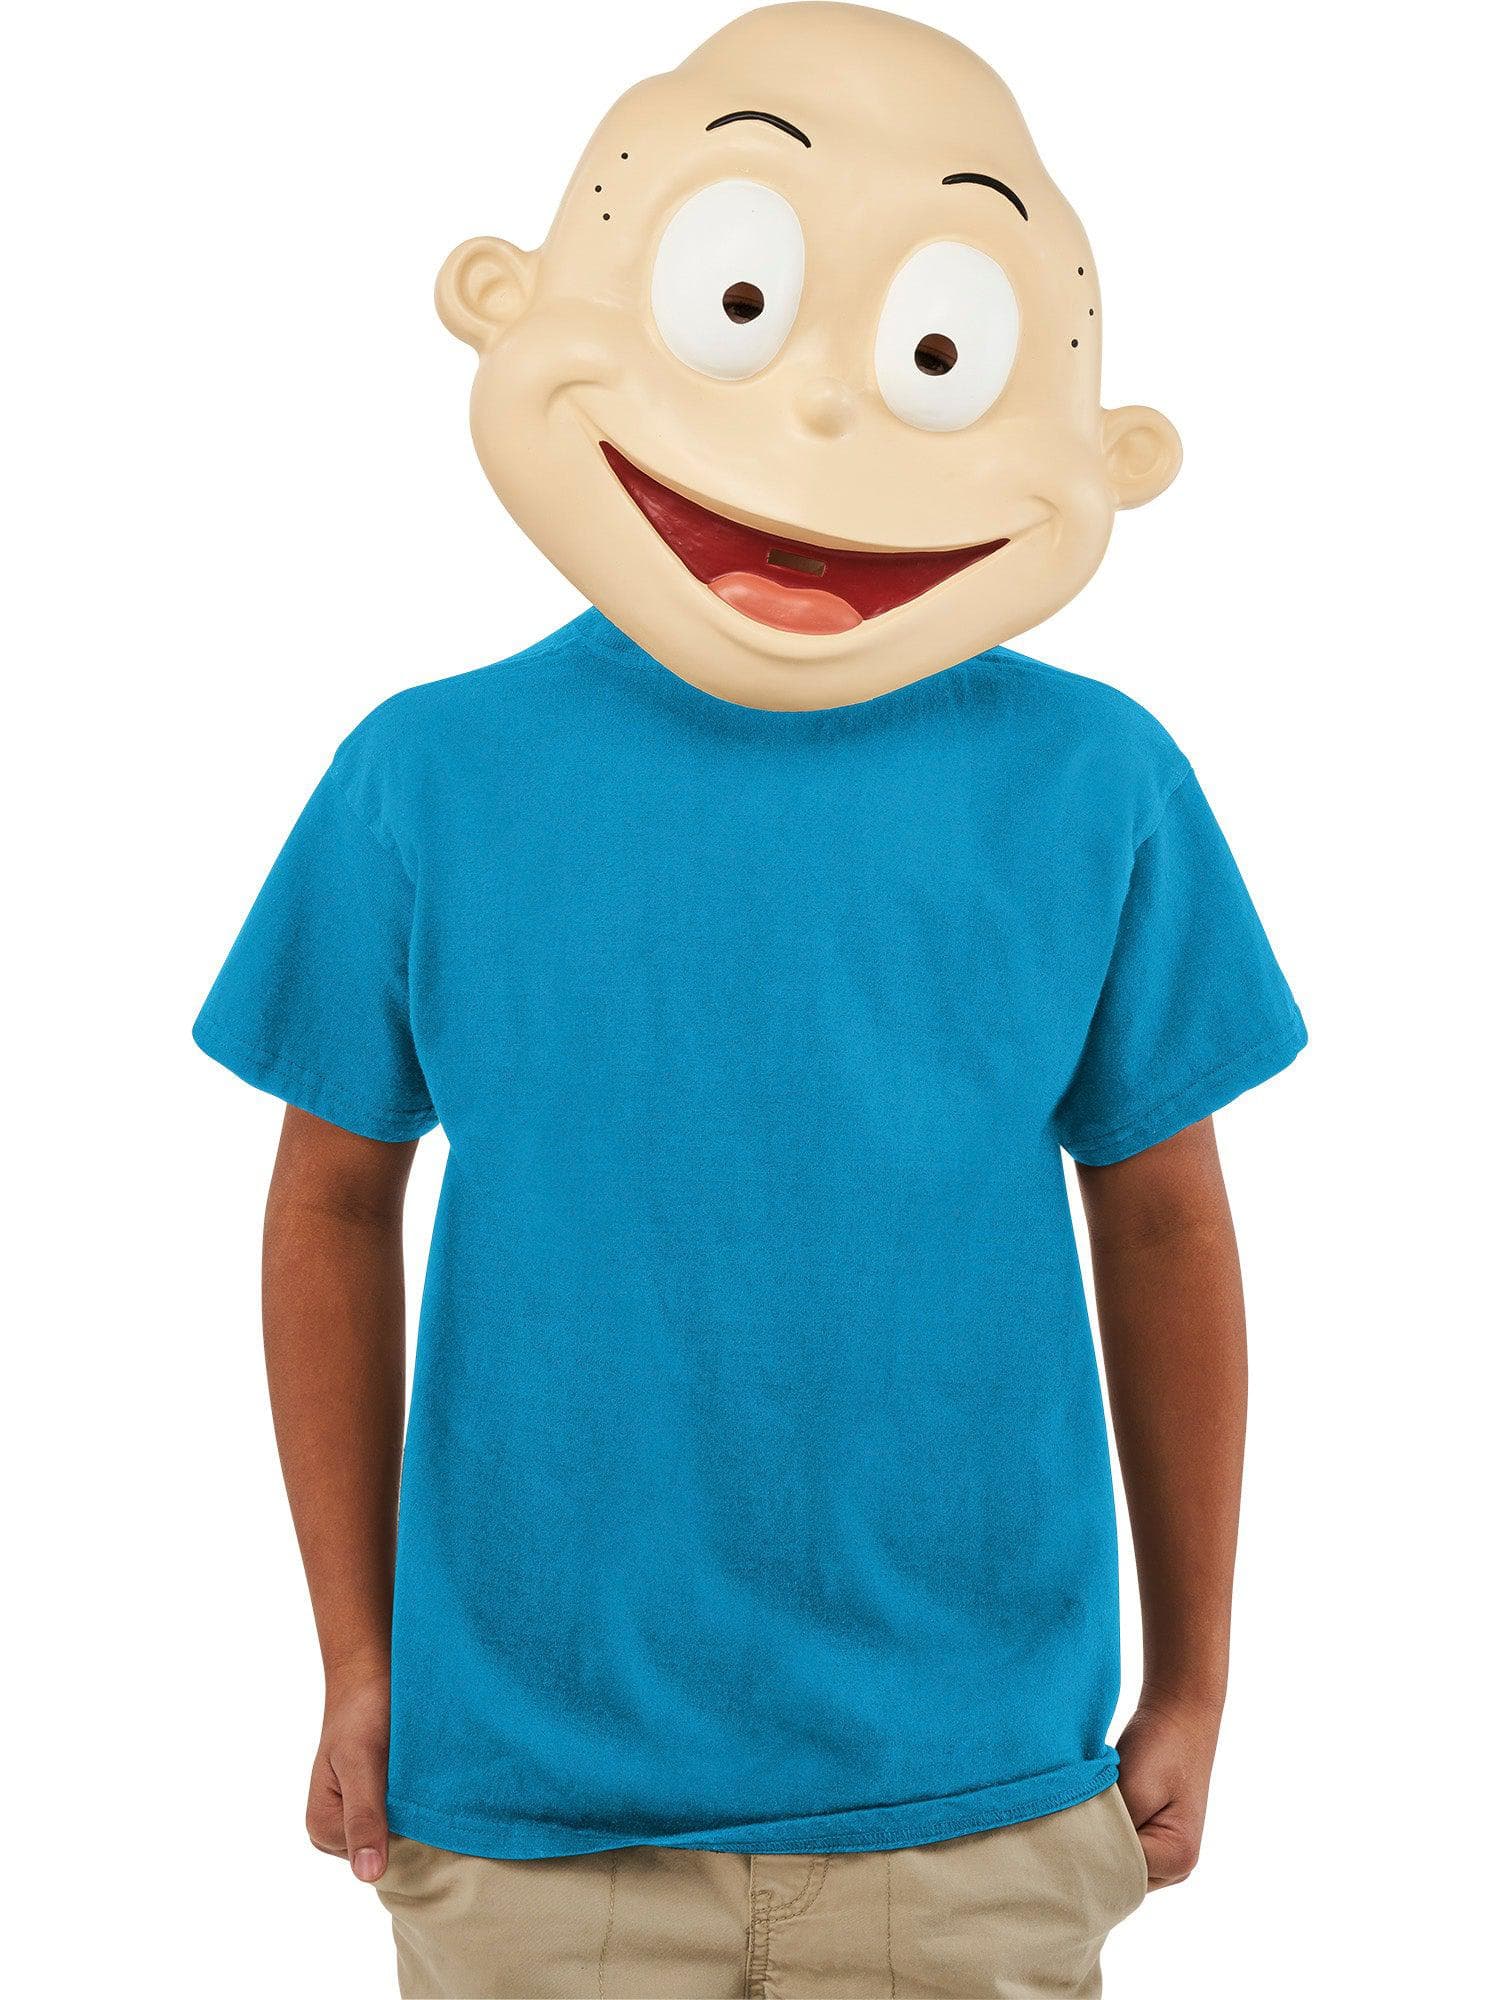 Kids' Rugrats Tommy Pickles Half Mask - costumes.com